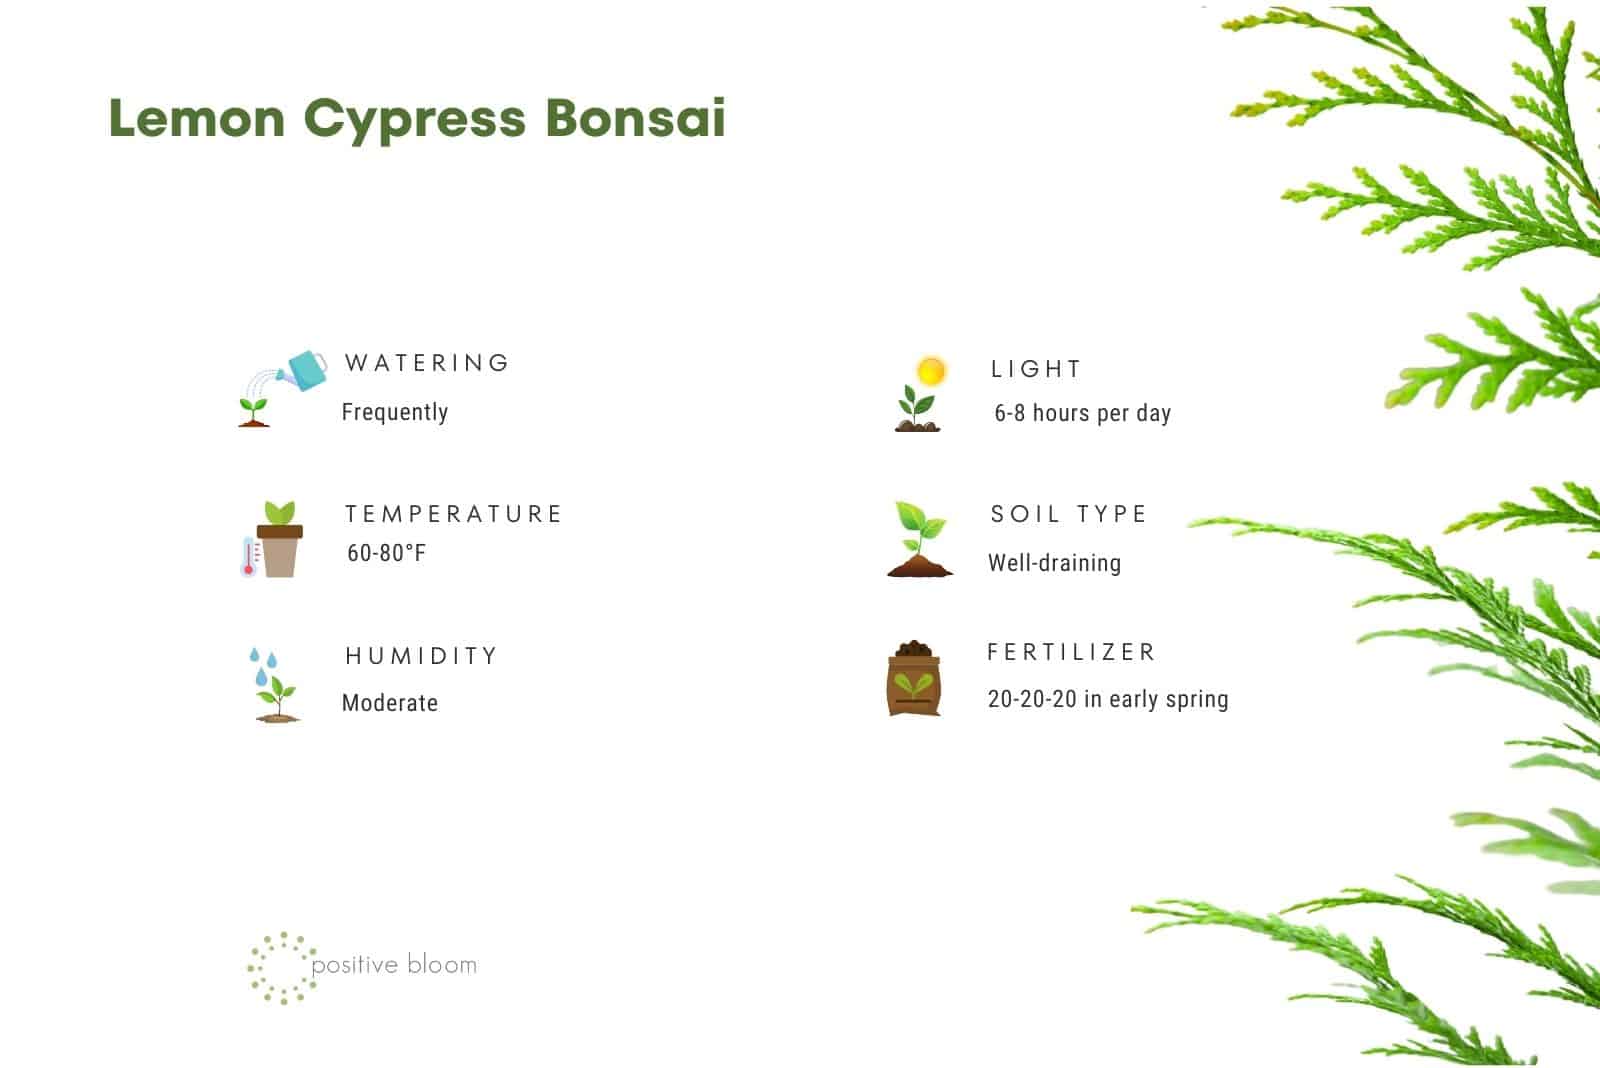 Lemon Cypress Bonsai facts